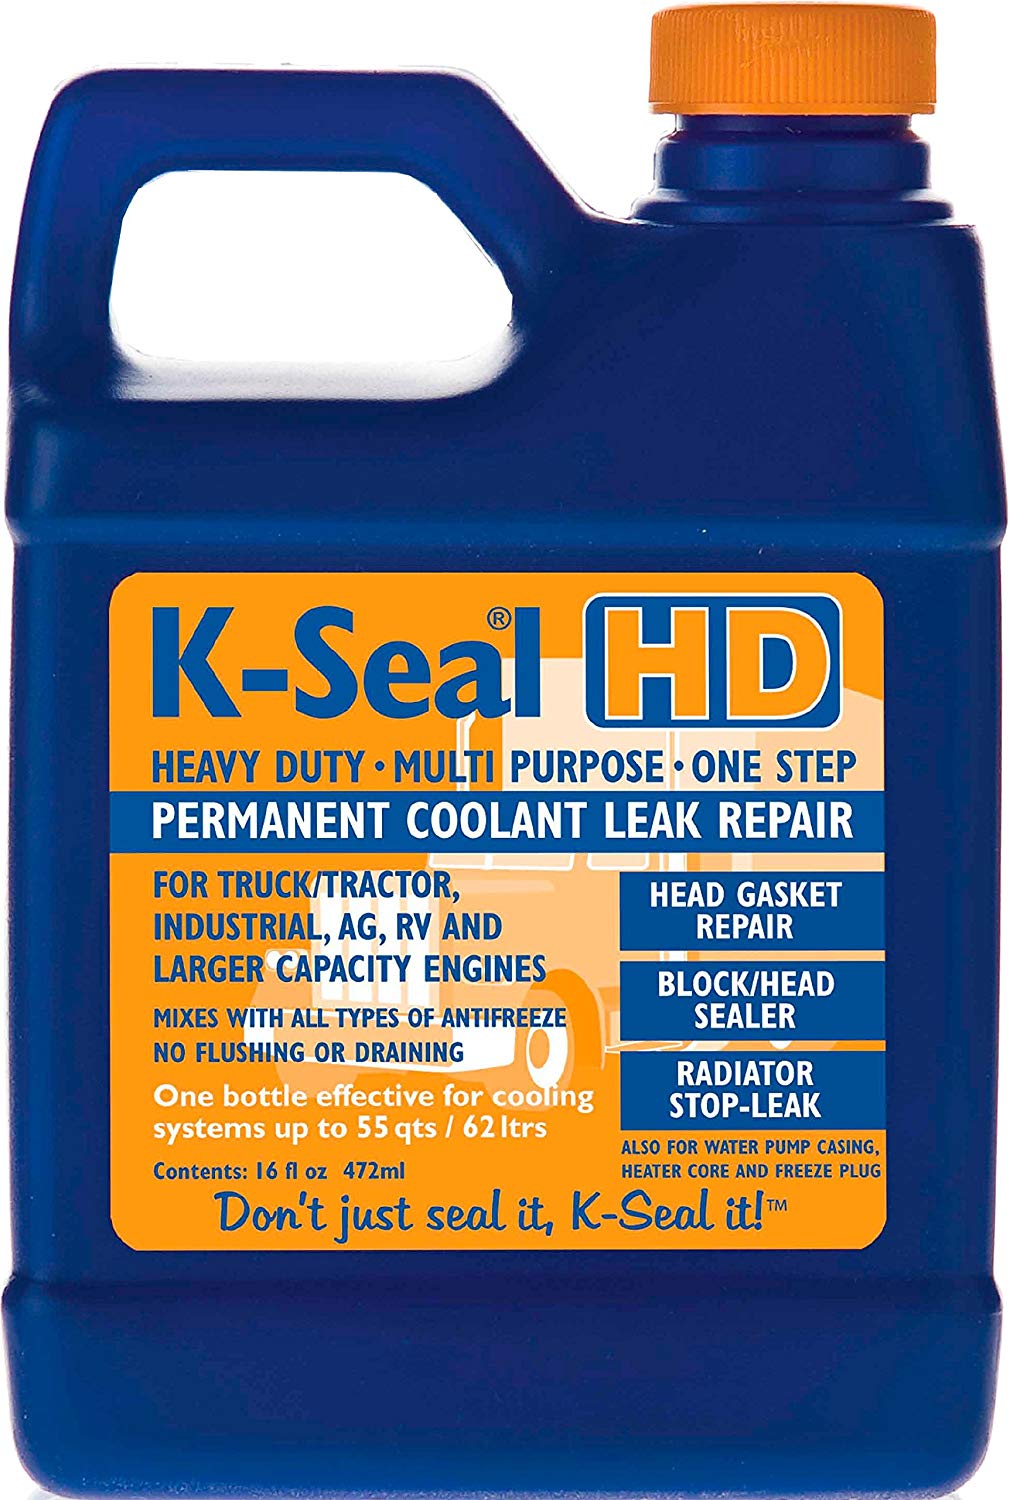 K-Seal ST5516 HD Multi Purpose One Step Permanent Coolant Leak Repair